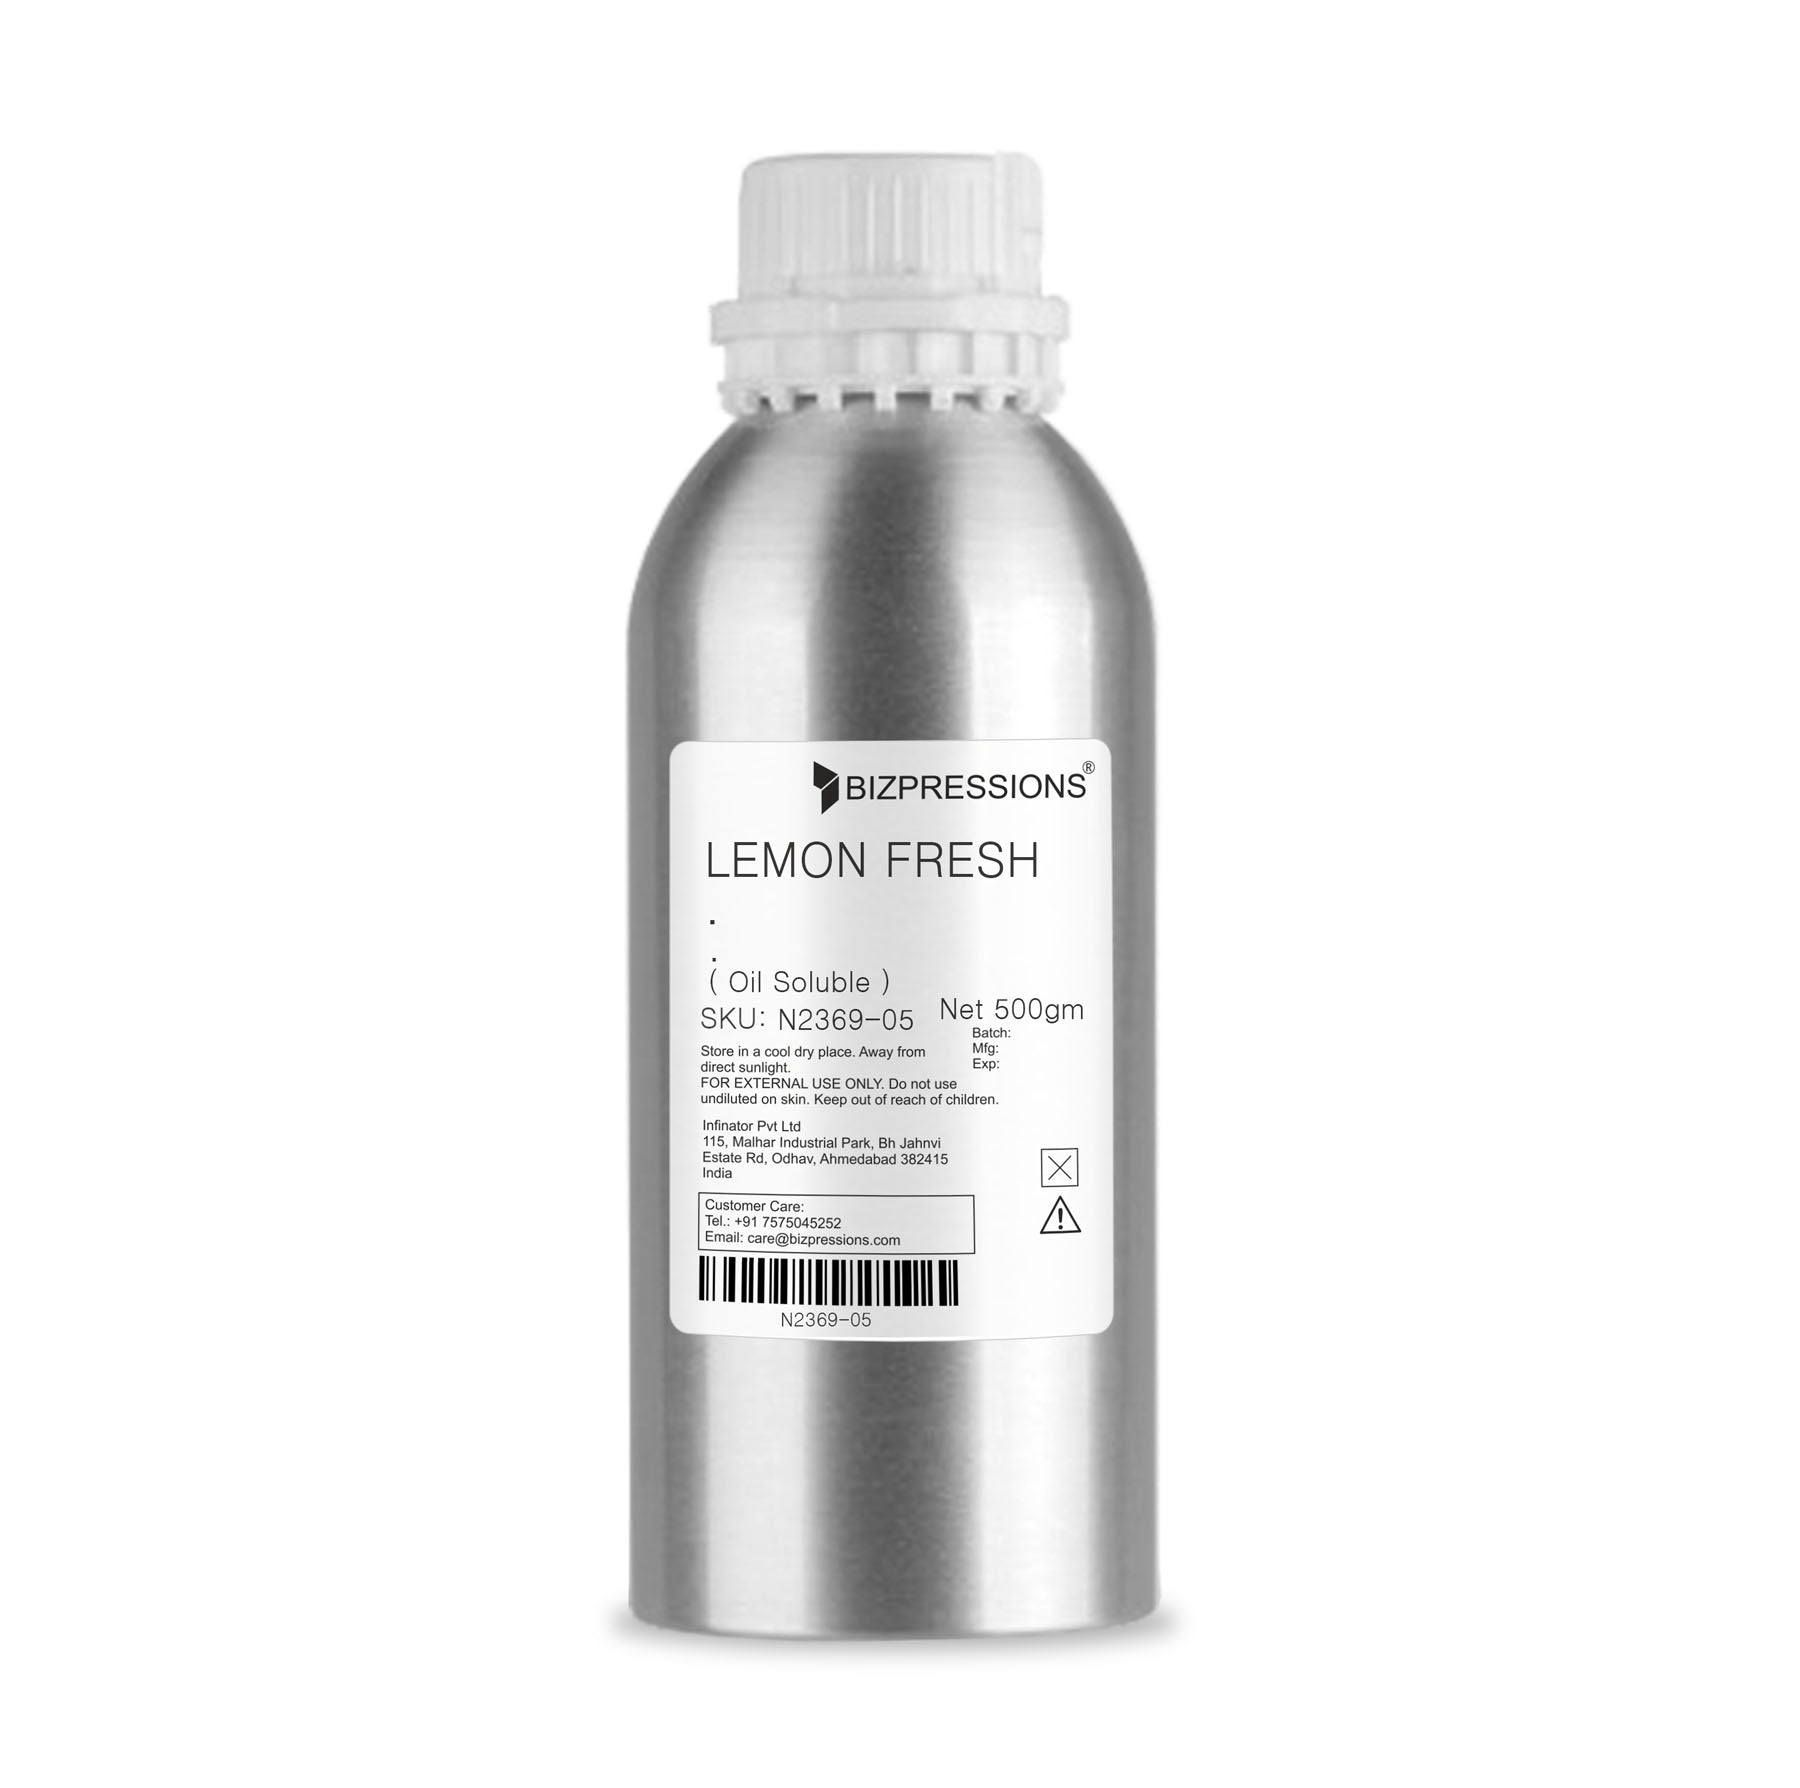 LEMON FRESH - Fragrance ( Oil Soluble ) - 500 gm